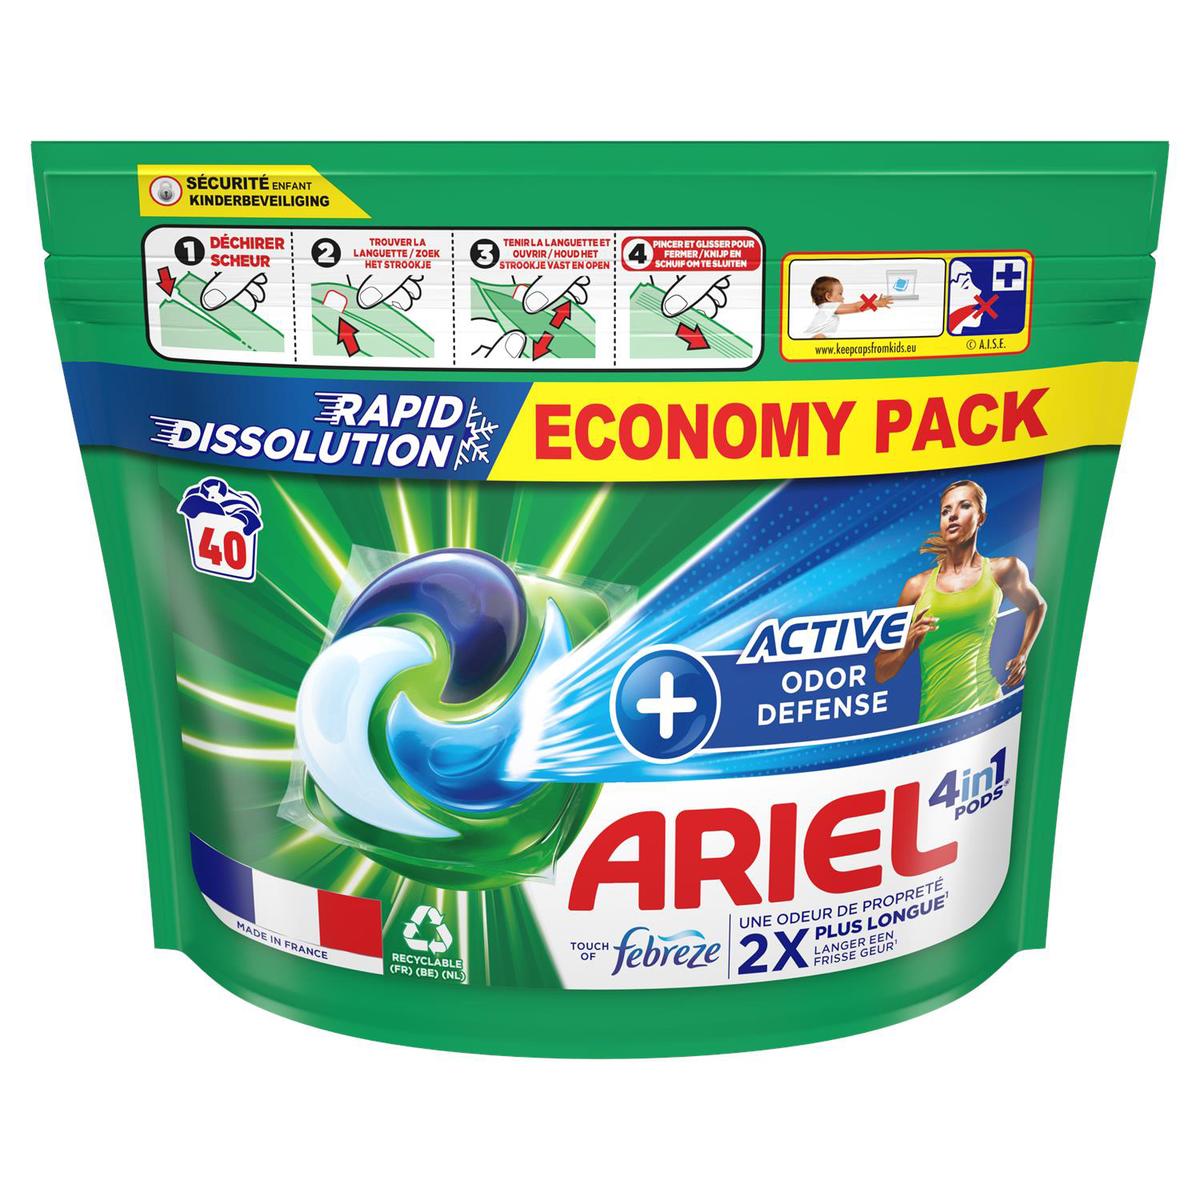 Lessive en capsule Ariel Active+, 39 Lavages (Via 16,79€ sur Carte  Fidélité) –